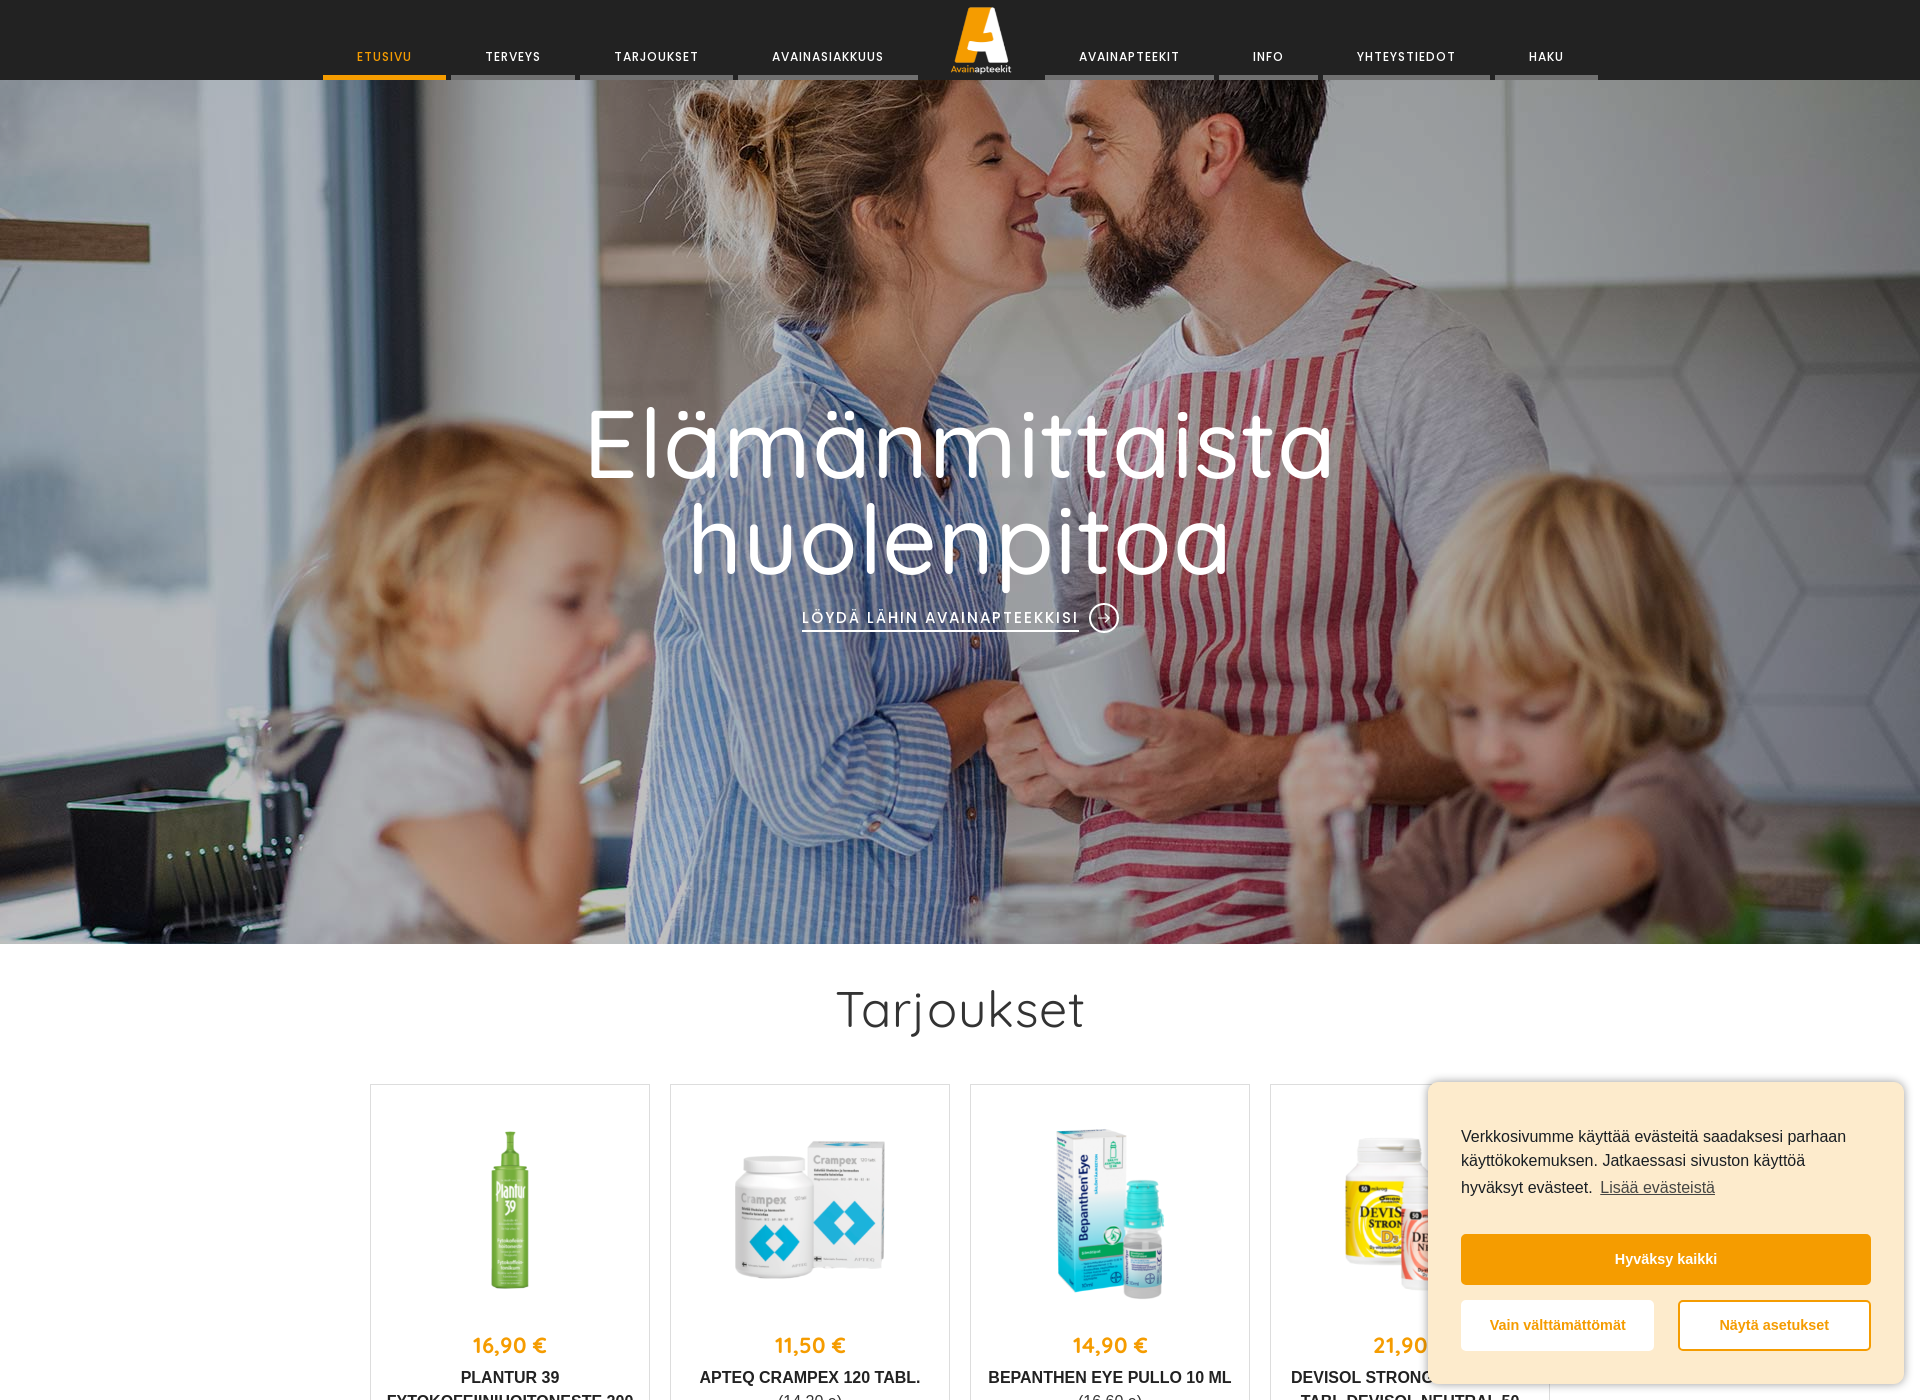 Näyttökuva avainakatemia.fi